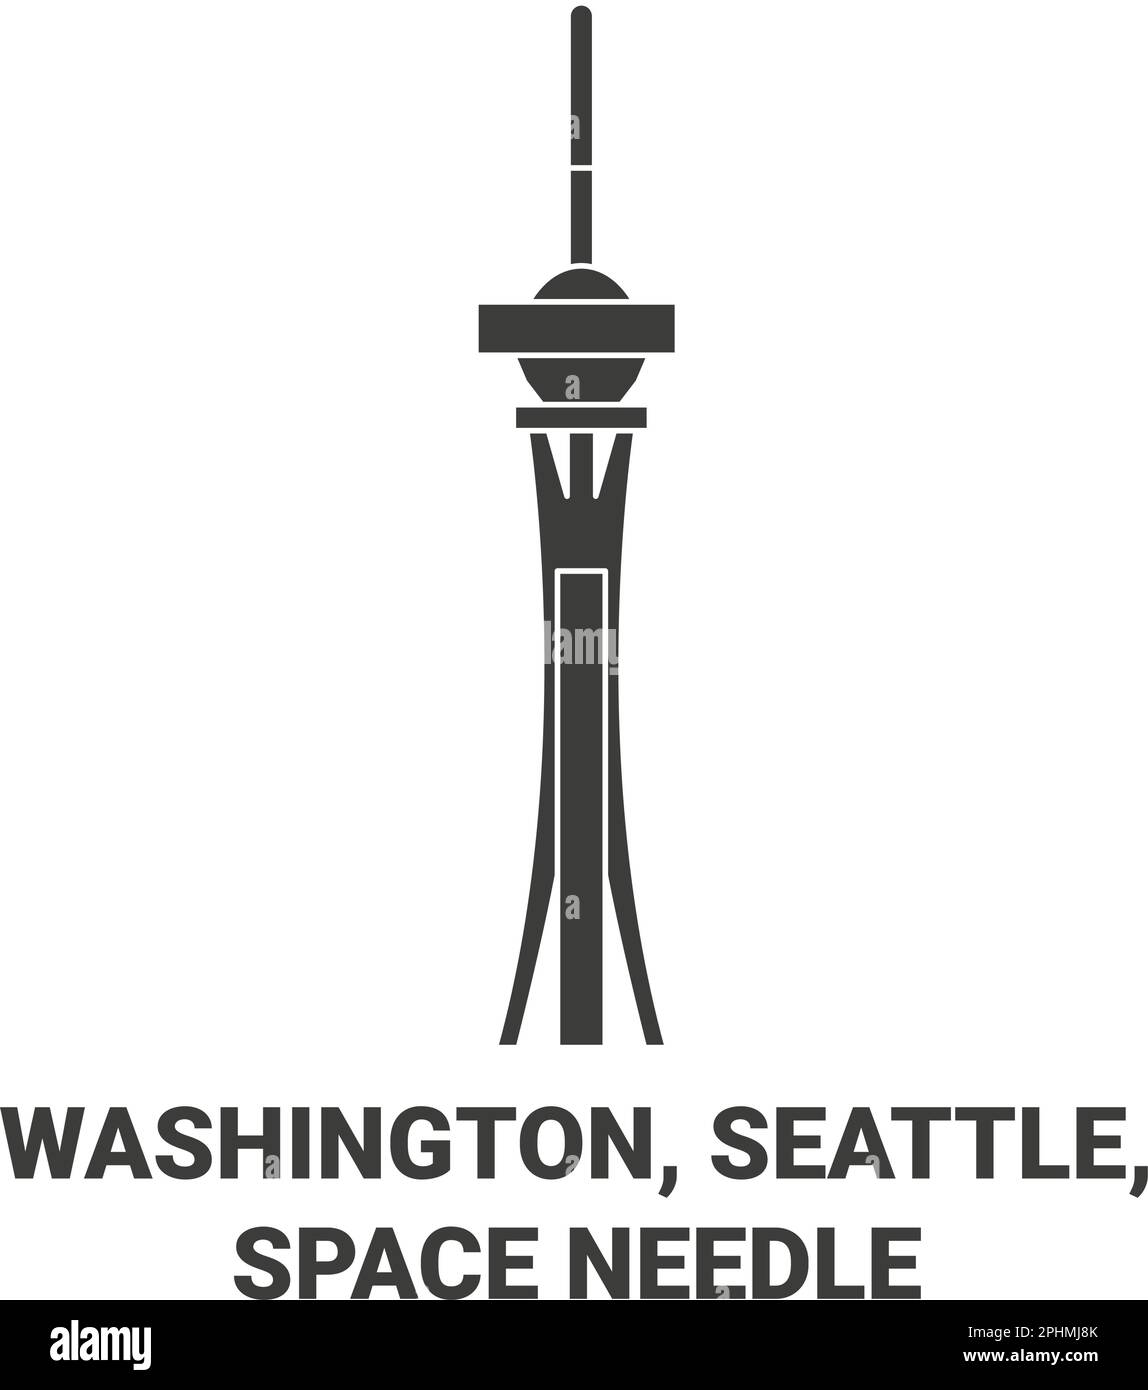 États-Unis, Washington, Seattle, Space Needle Voyage illustration du vecteur de repère Illustration de Vecteur